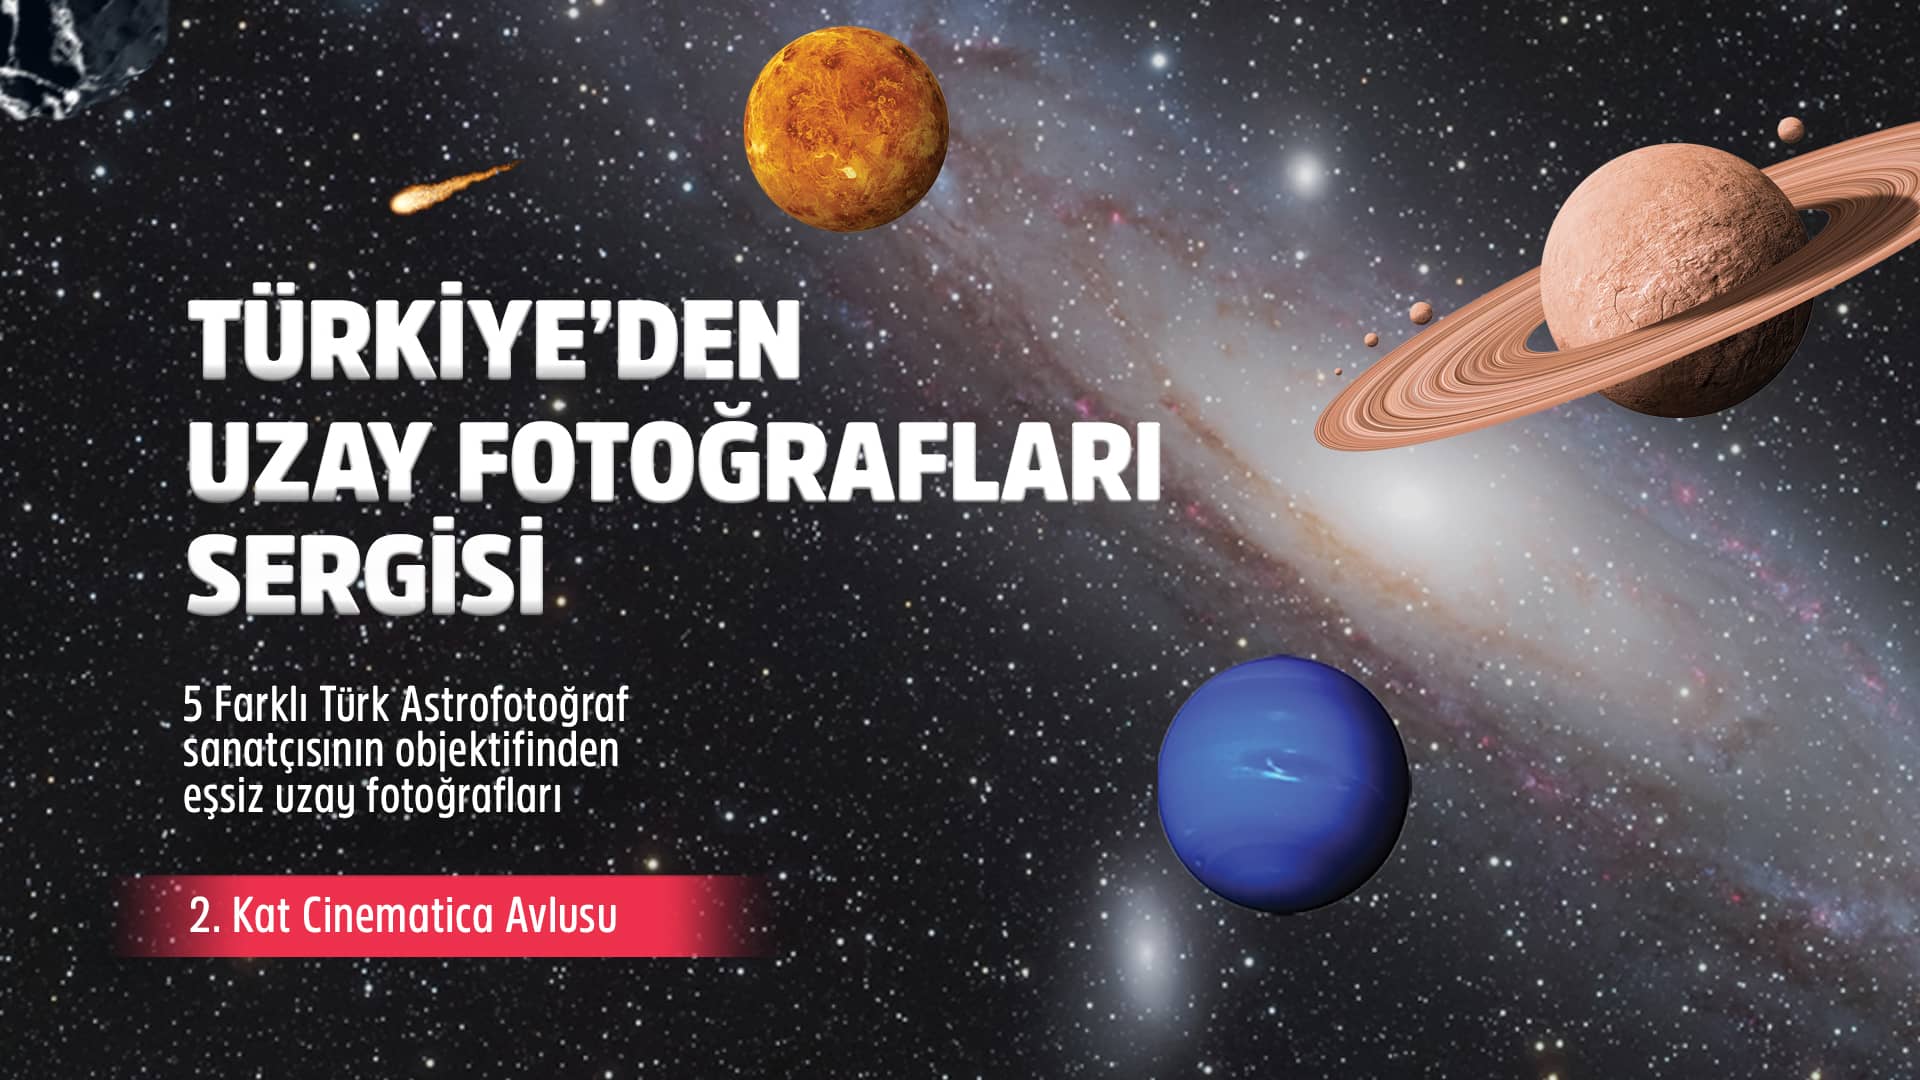 Türkiye’den Uzay Fotoğrafları Sergisi Metropol İstanbul’da!